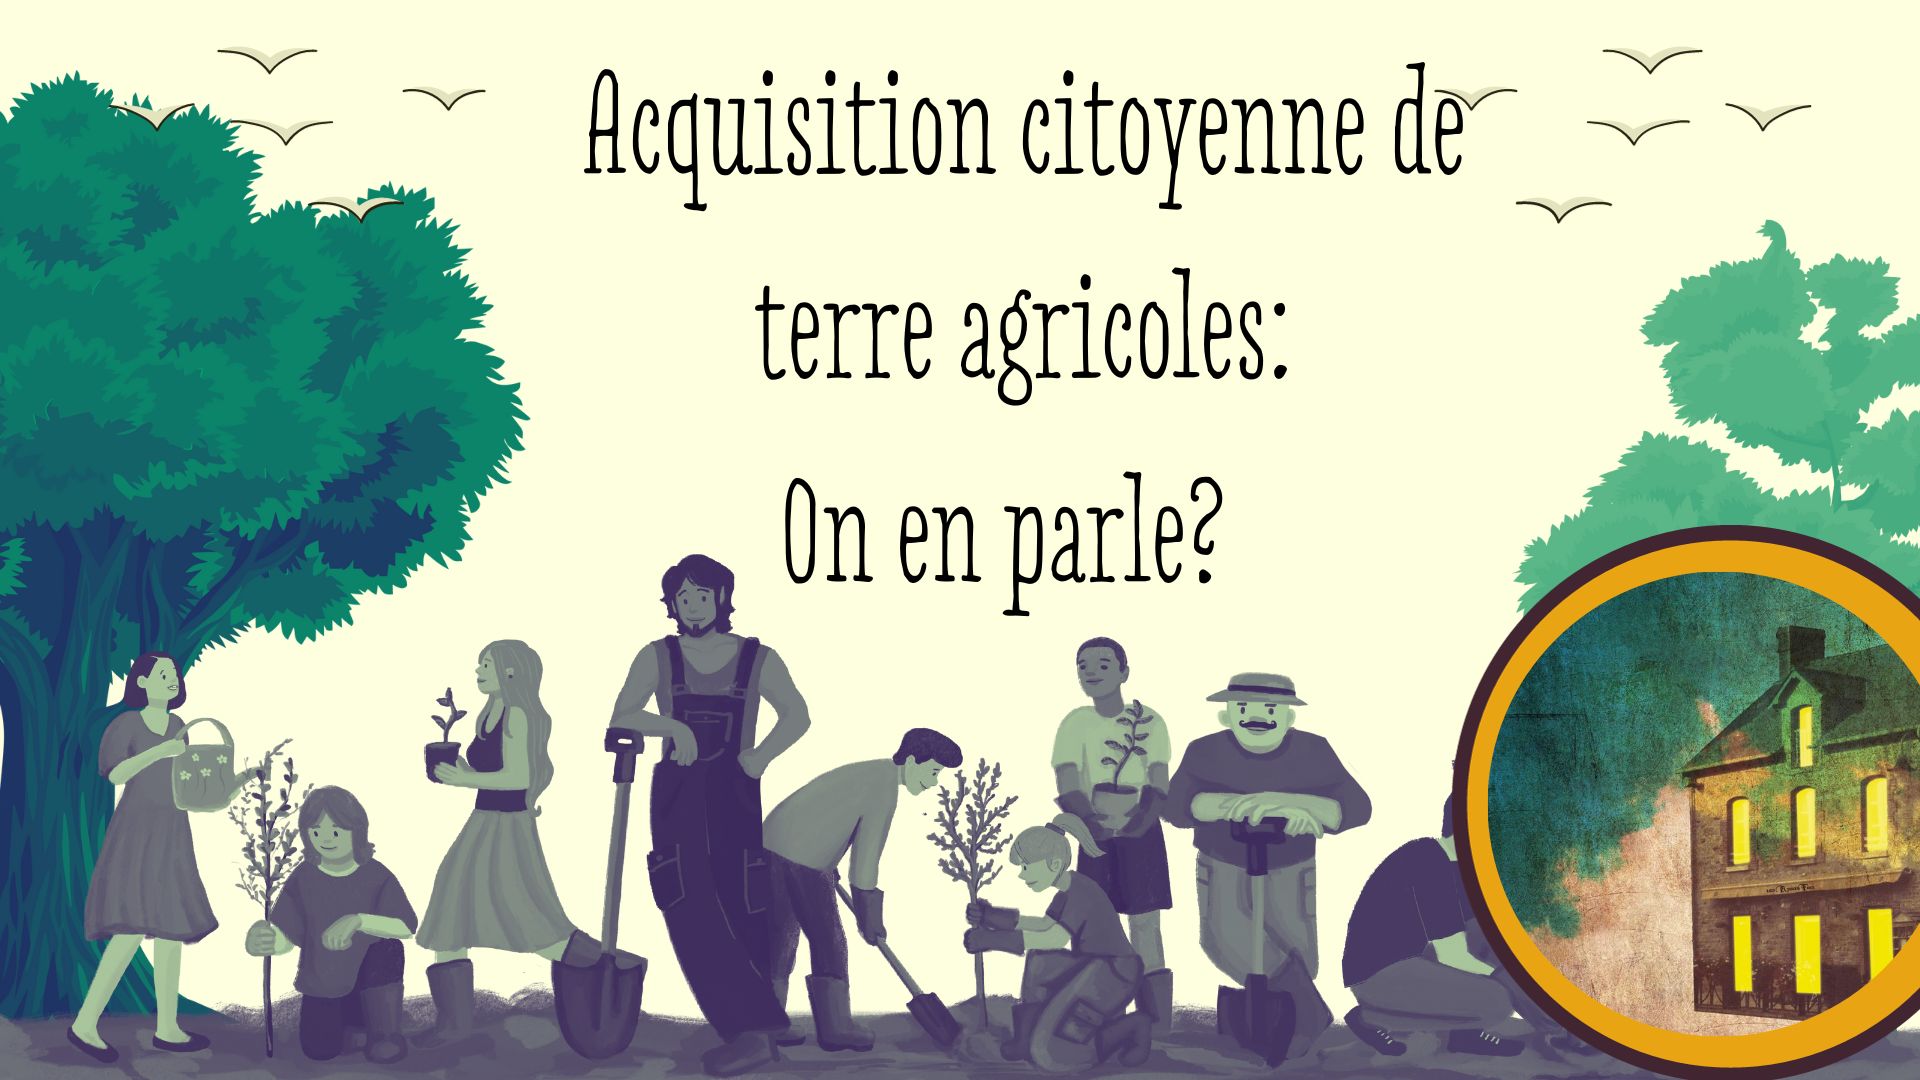 "Acquisition citoyenne de terres agricoles: on en parle?" avec une illustration de personnes qui plantent des arbres. 